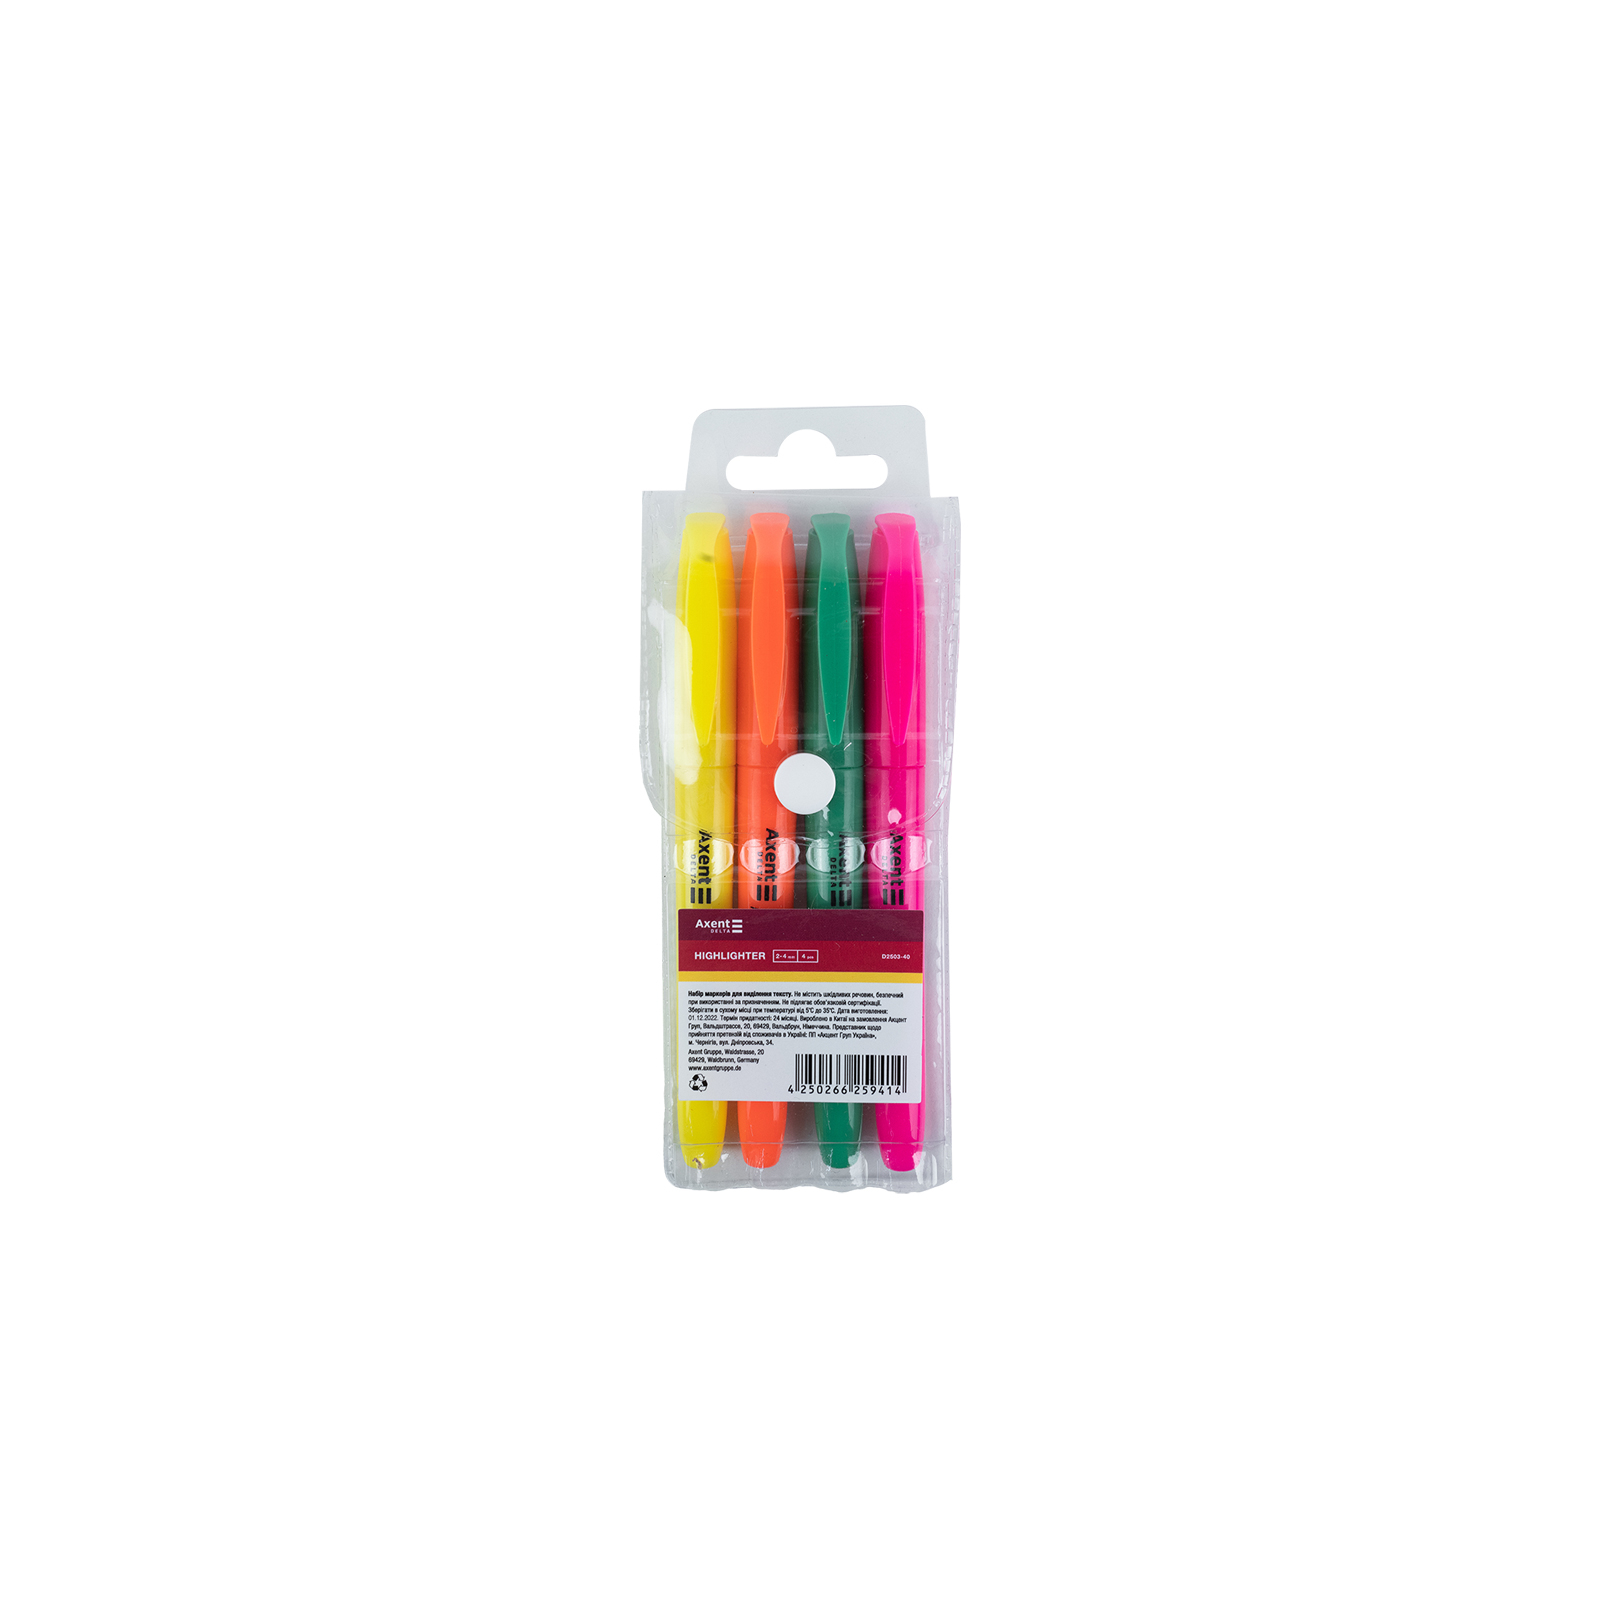 Набор маркеров Axent набор Highlighter 2-4 мм клиновидный из 4-х цветов (D2503-40) изображение 2